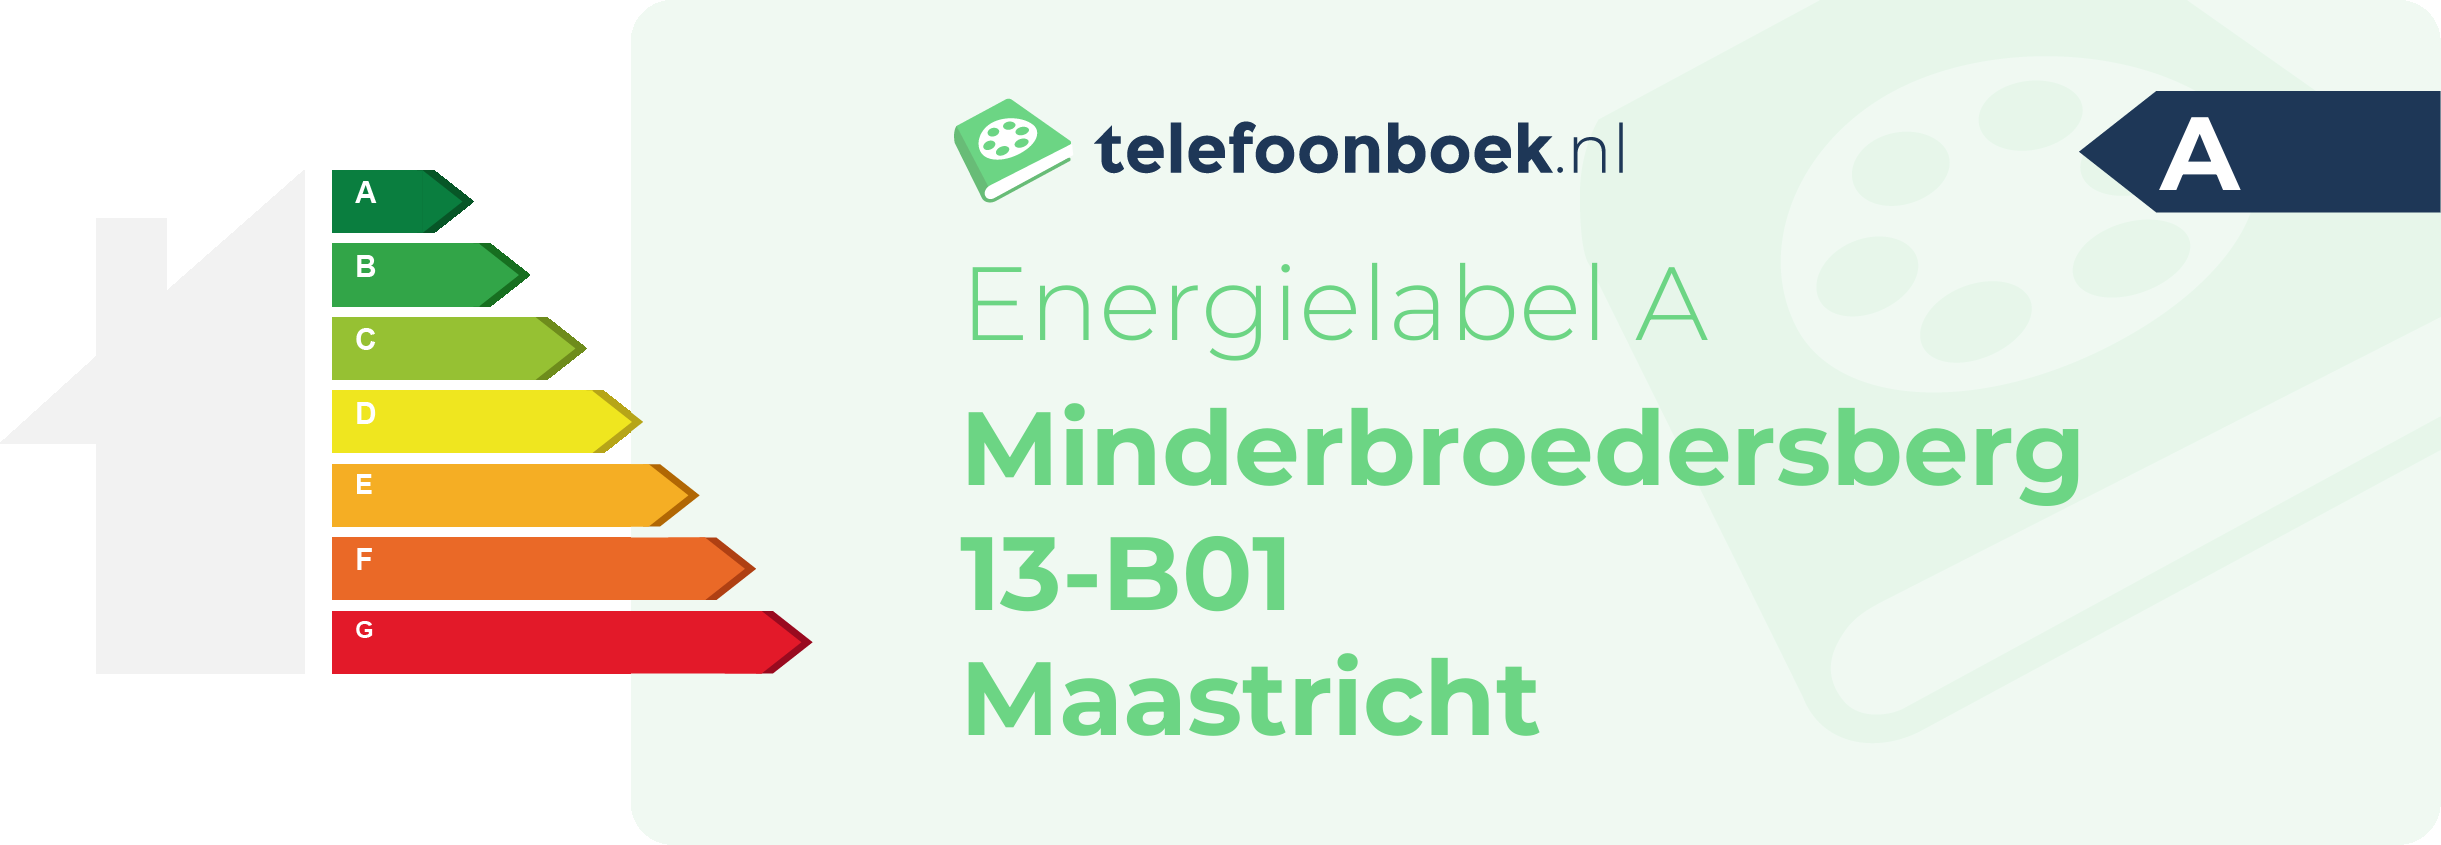 Energielabel Minderbroedersberg 13-B01 Maastricht